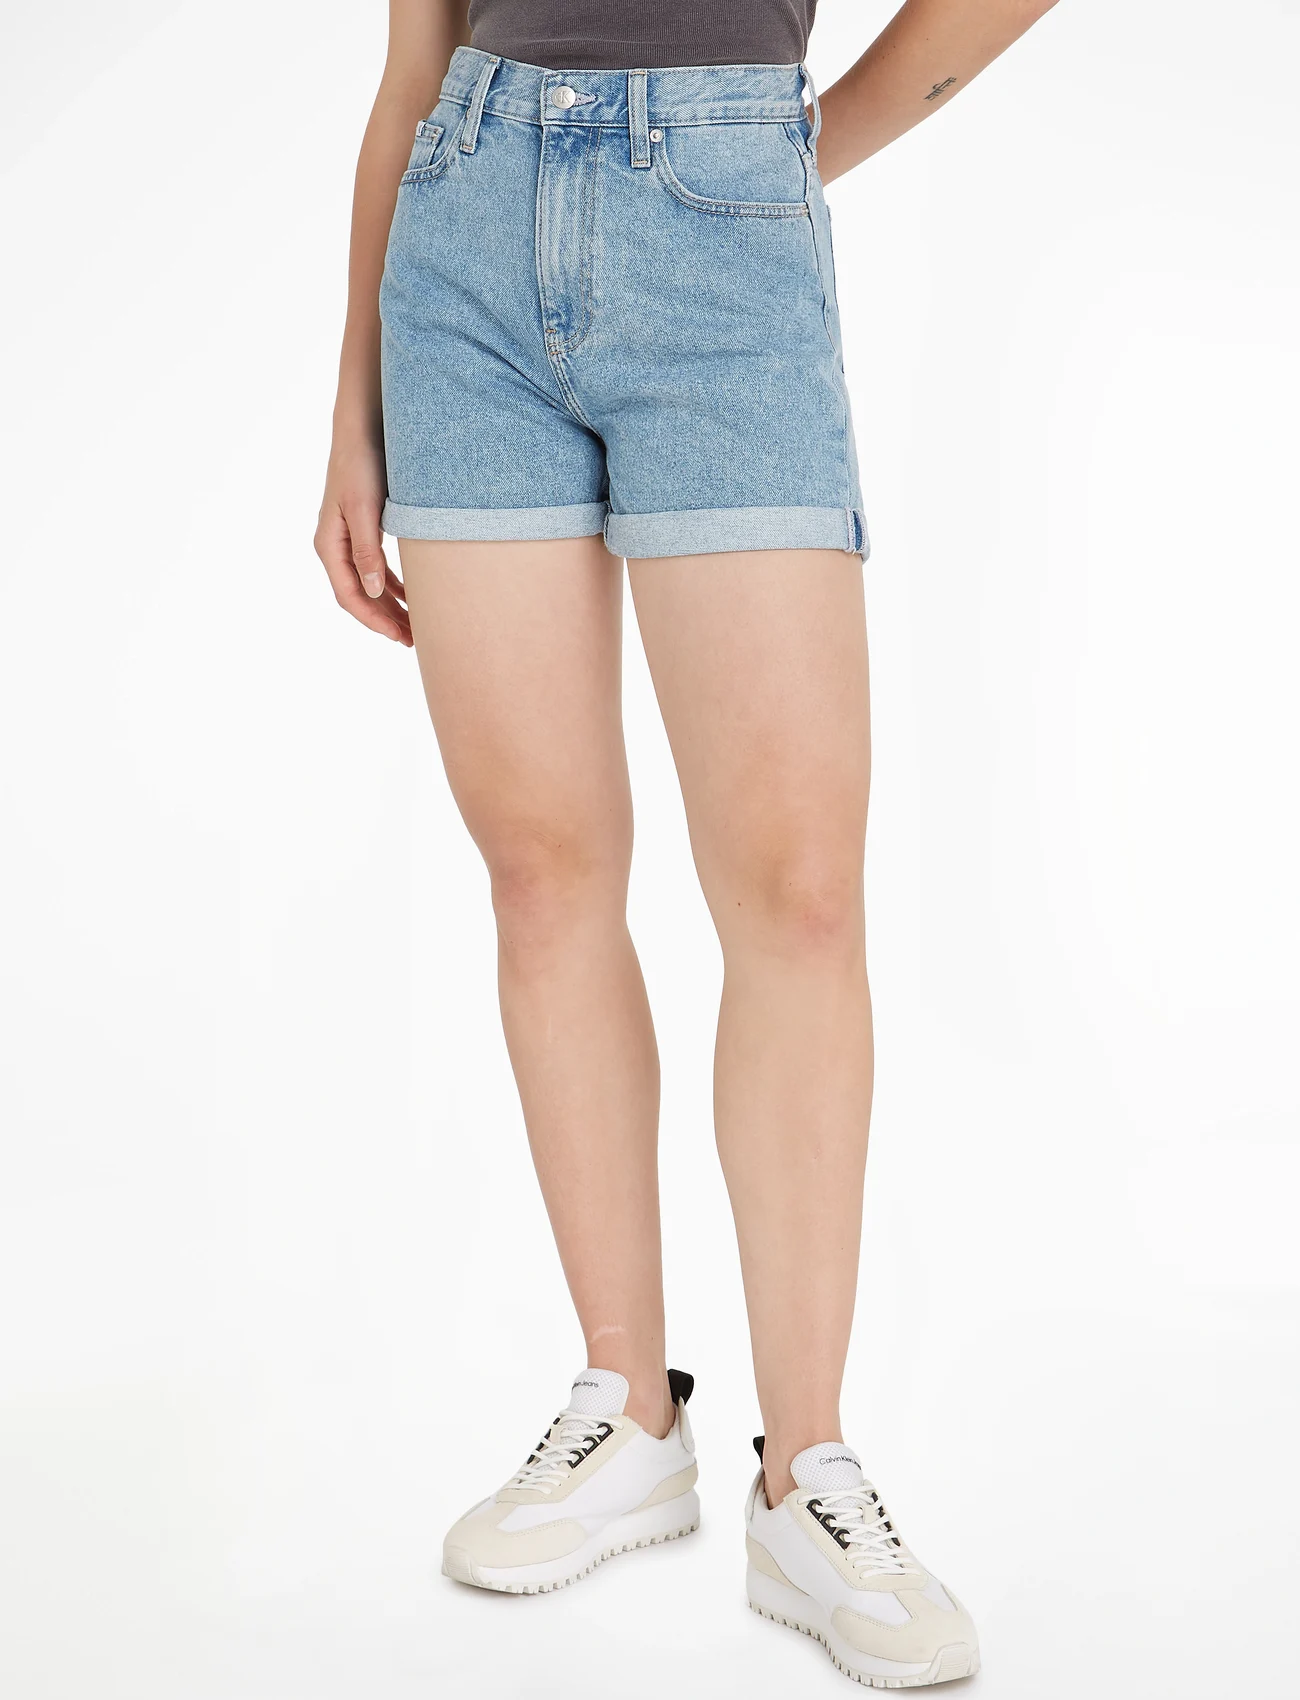 Calvin Klein Jeans - MOM SHORT - džinsiniai šortai - denim medium - 1